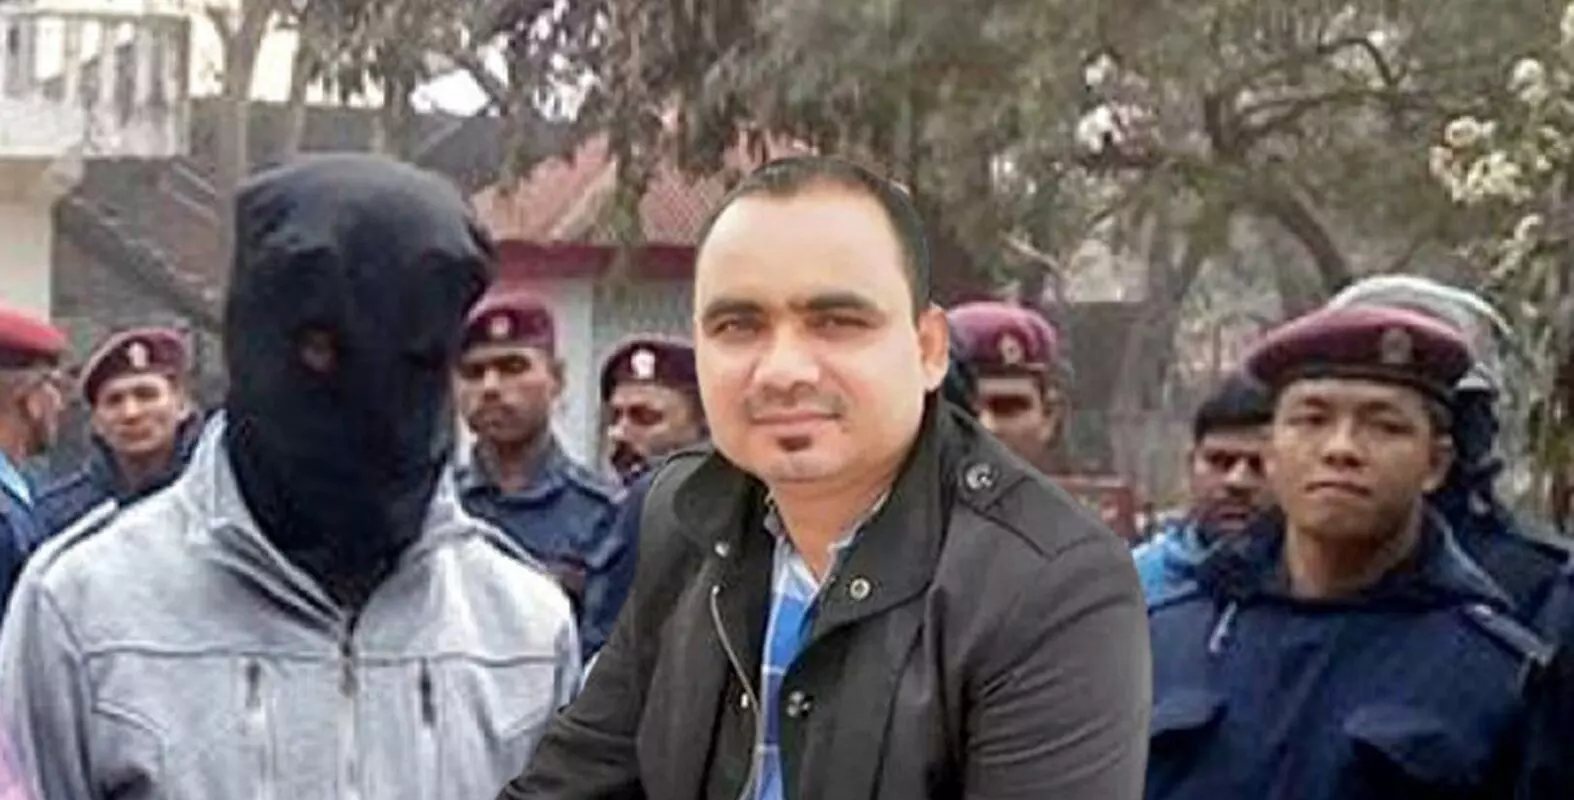 नेपाल की विशेष अदालत ने आईएसआई एजेंट को दिया दोषी करार, भारत में आतंकी गतिविधियों के लिए फंडिंग करता था